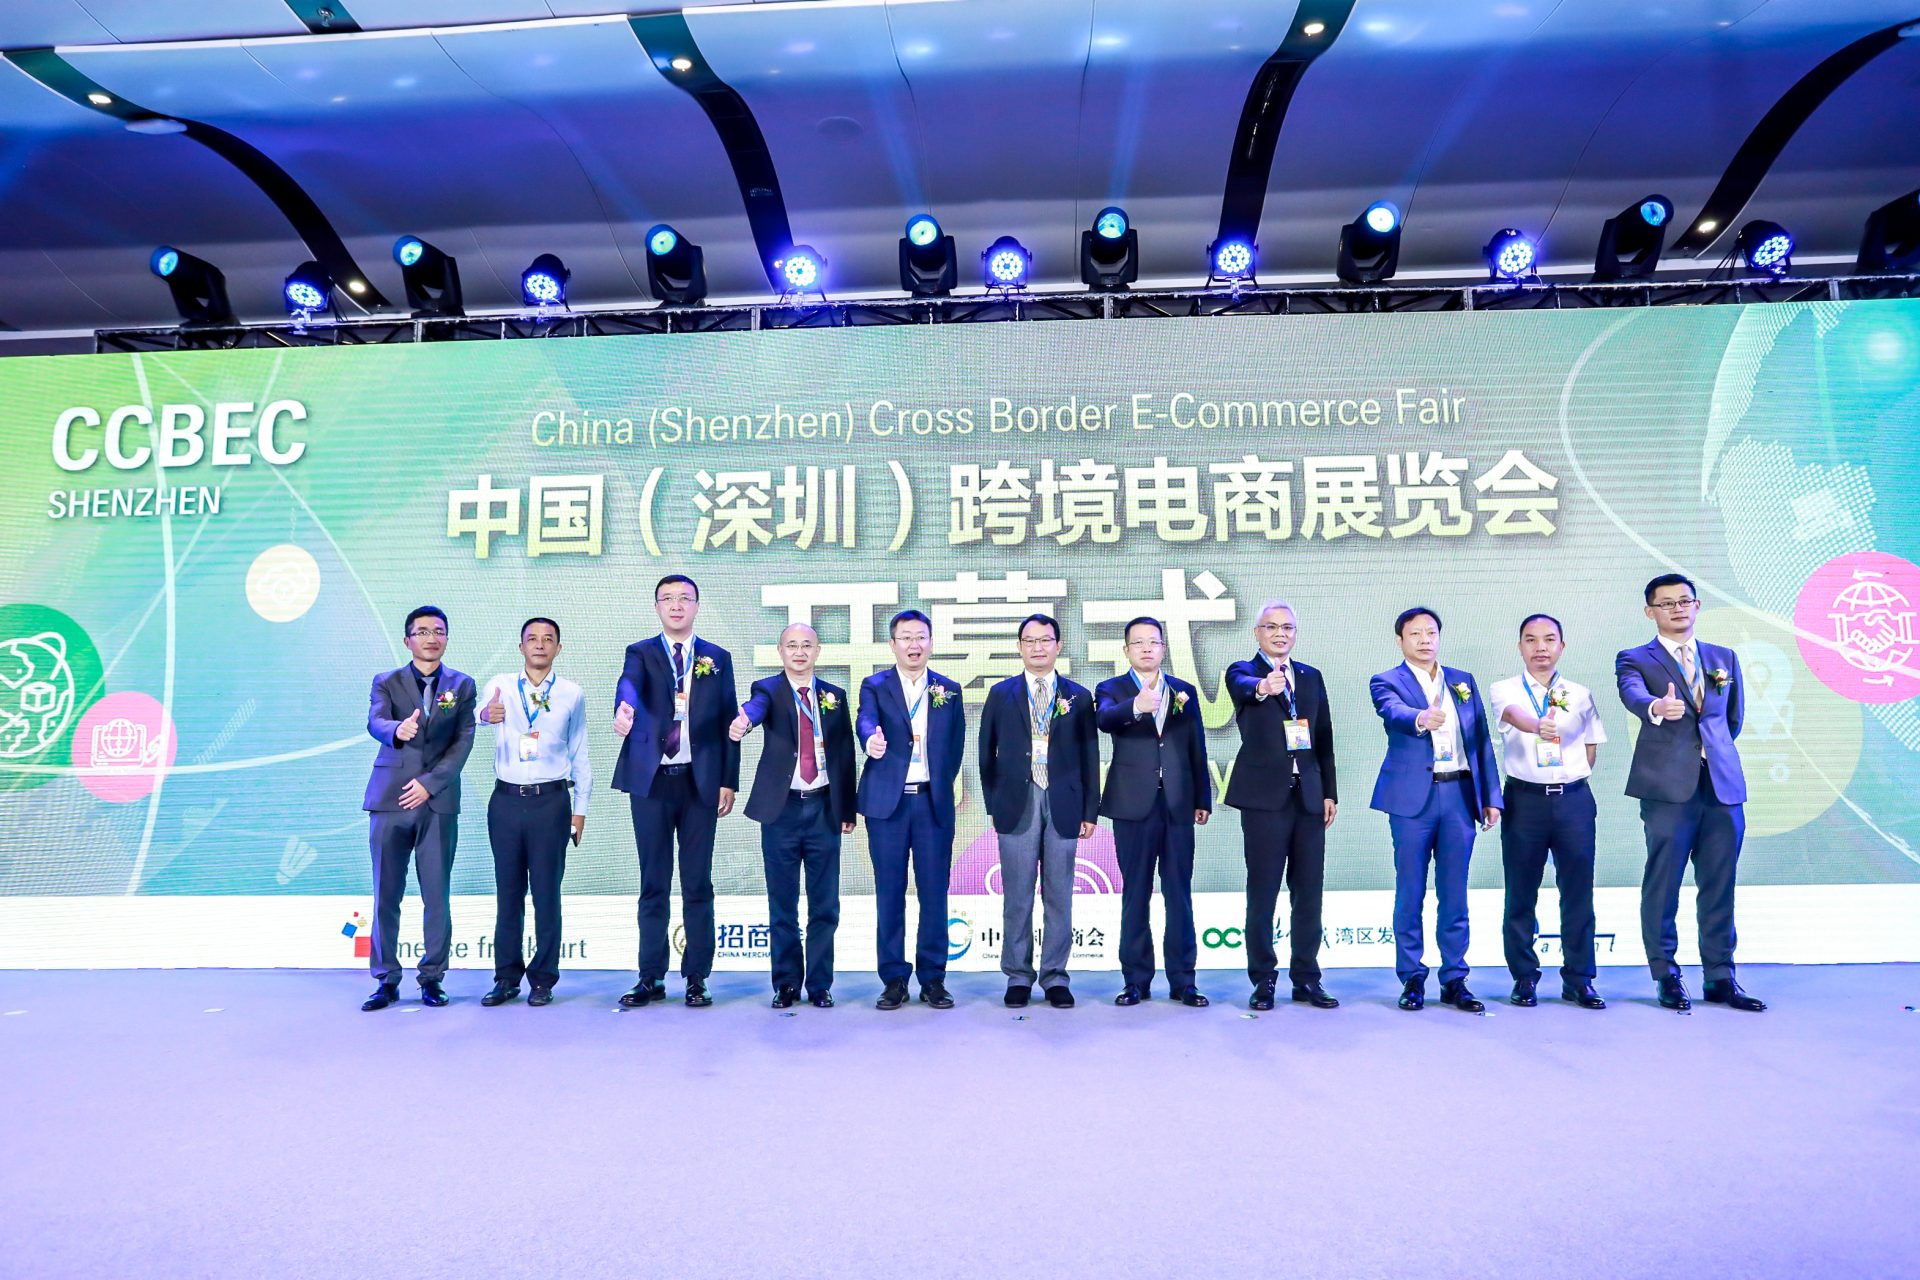 战略合作 | JOOM 邀您共赴跨境电商年度大展--CCBEC中国（深圳）跨境电商展览会（春季）